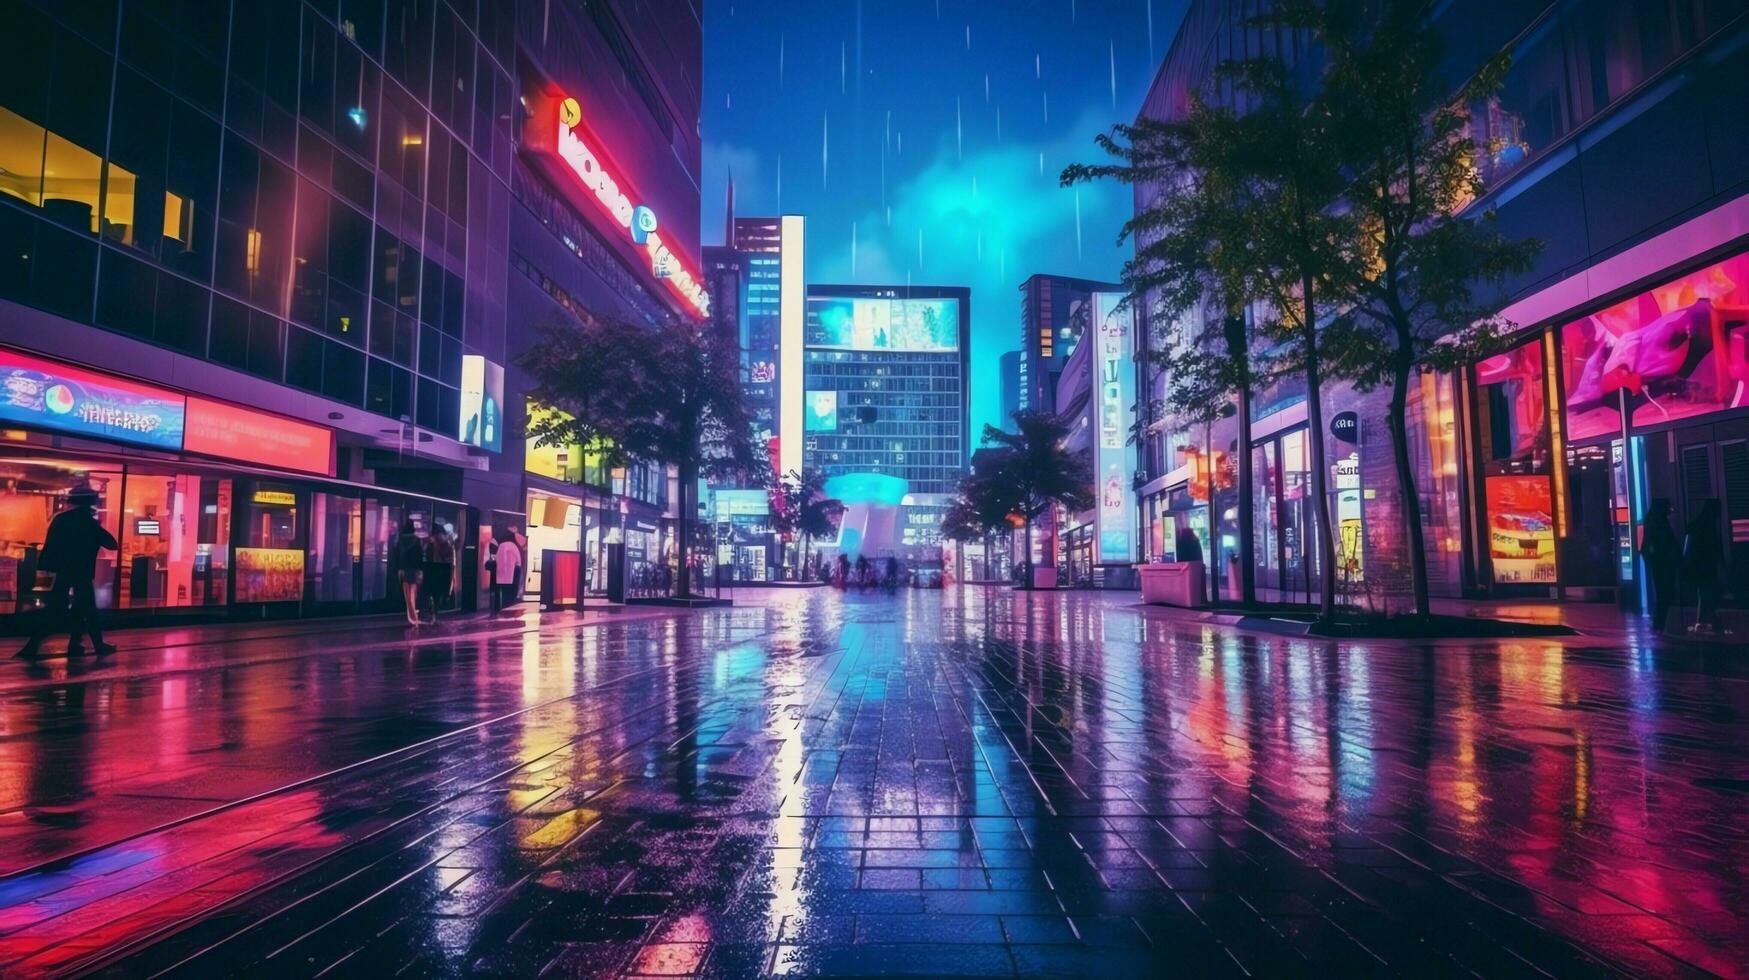 noche escena de después lluvia ciudad en cyberpunk estilo, futurista nostálgico años 80, años 90 neón luces vibrante colores, fotorrealista horizontal ilustración. ai generado foto